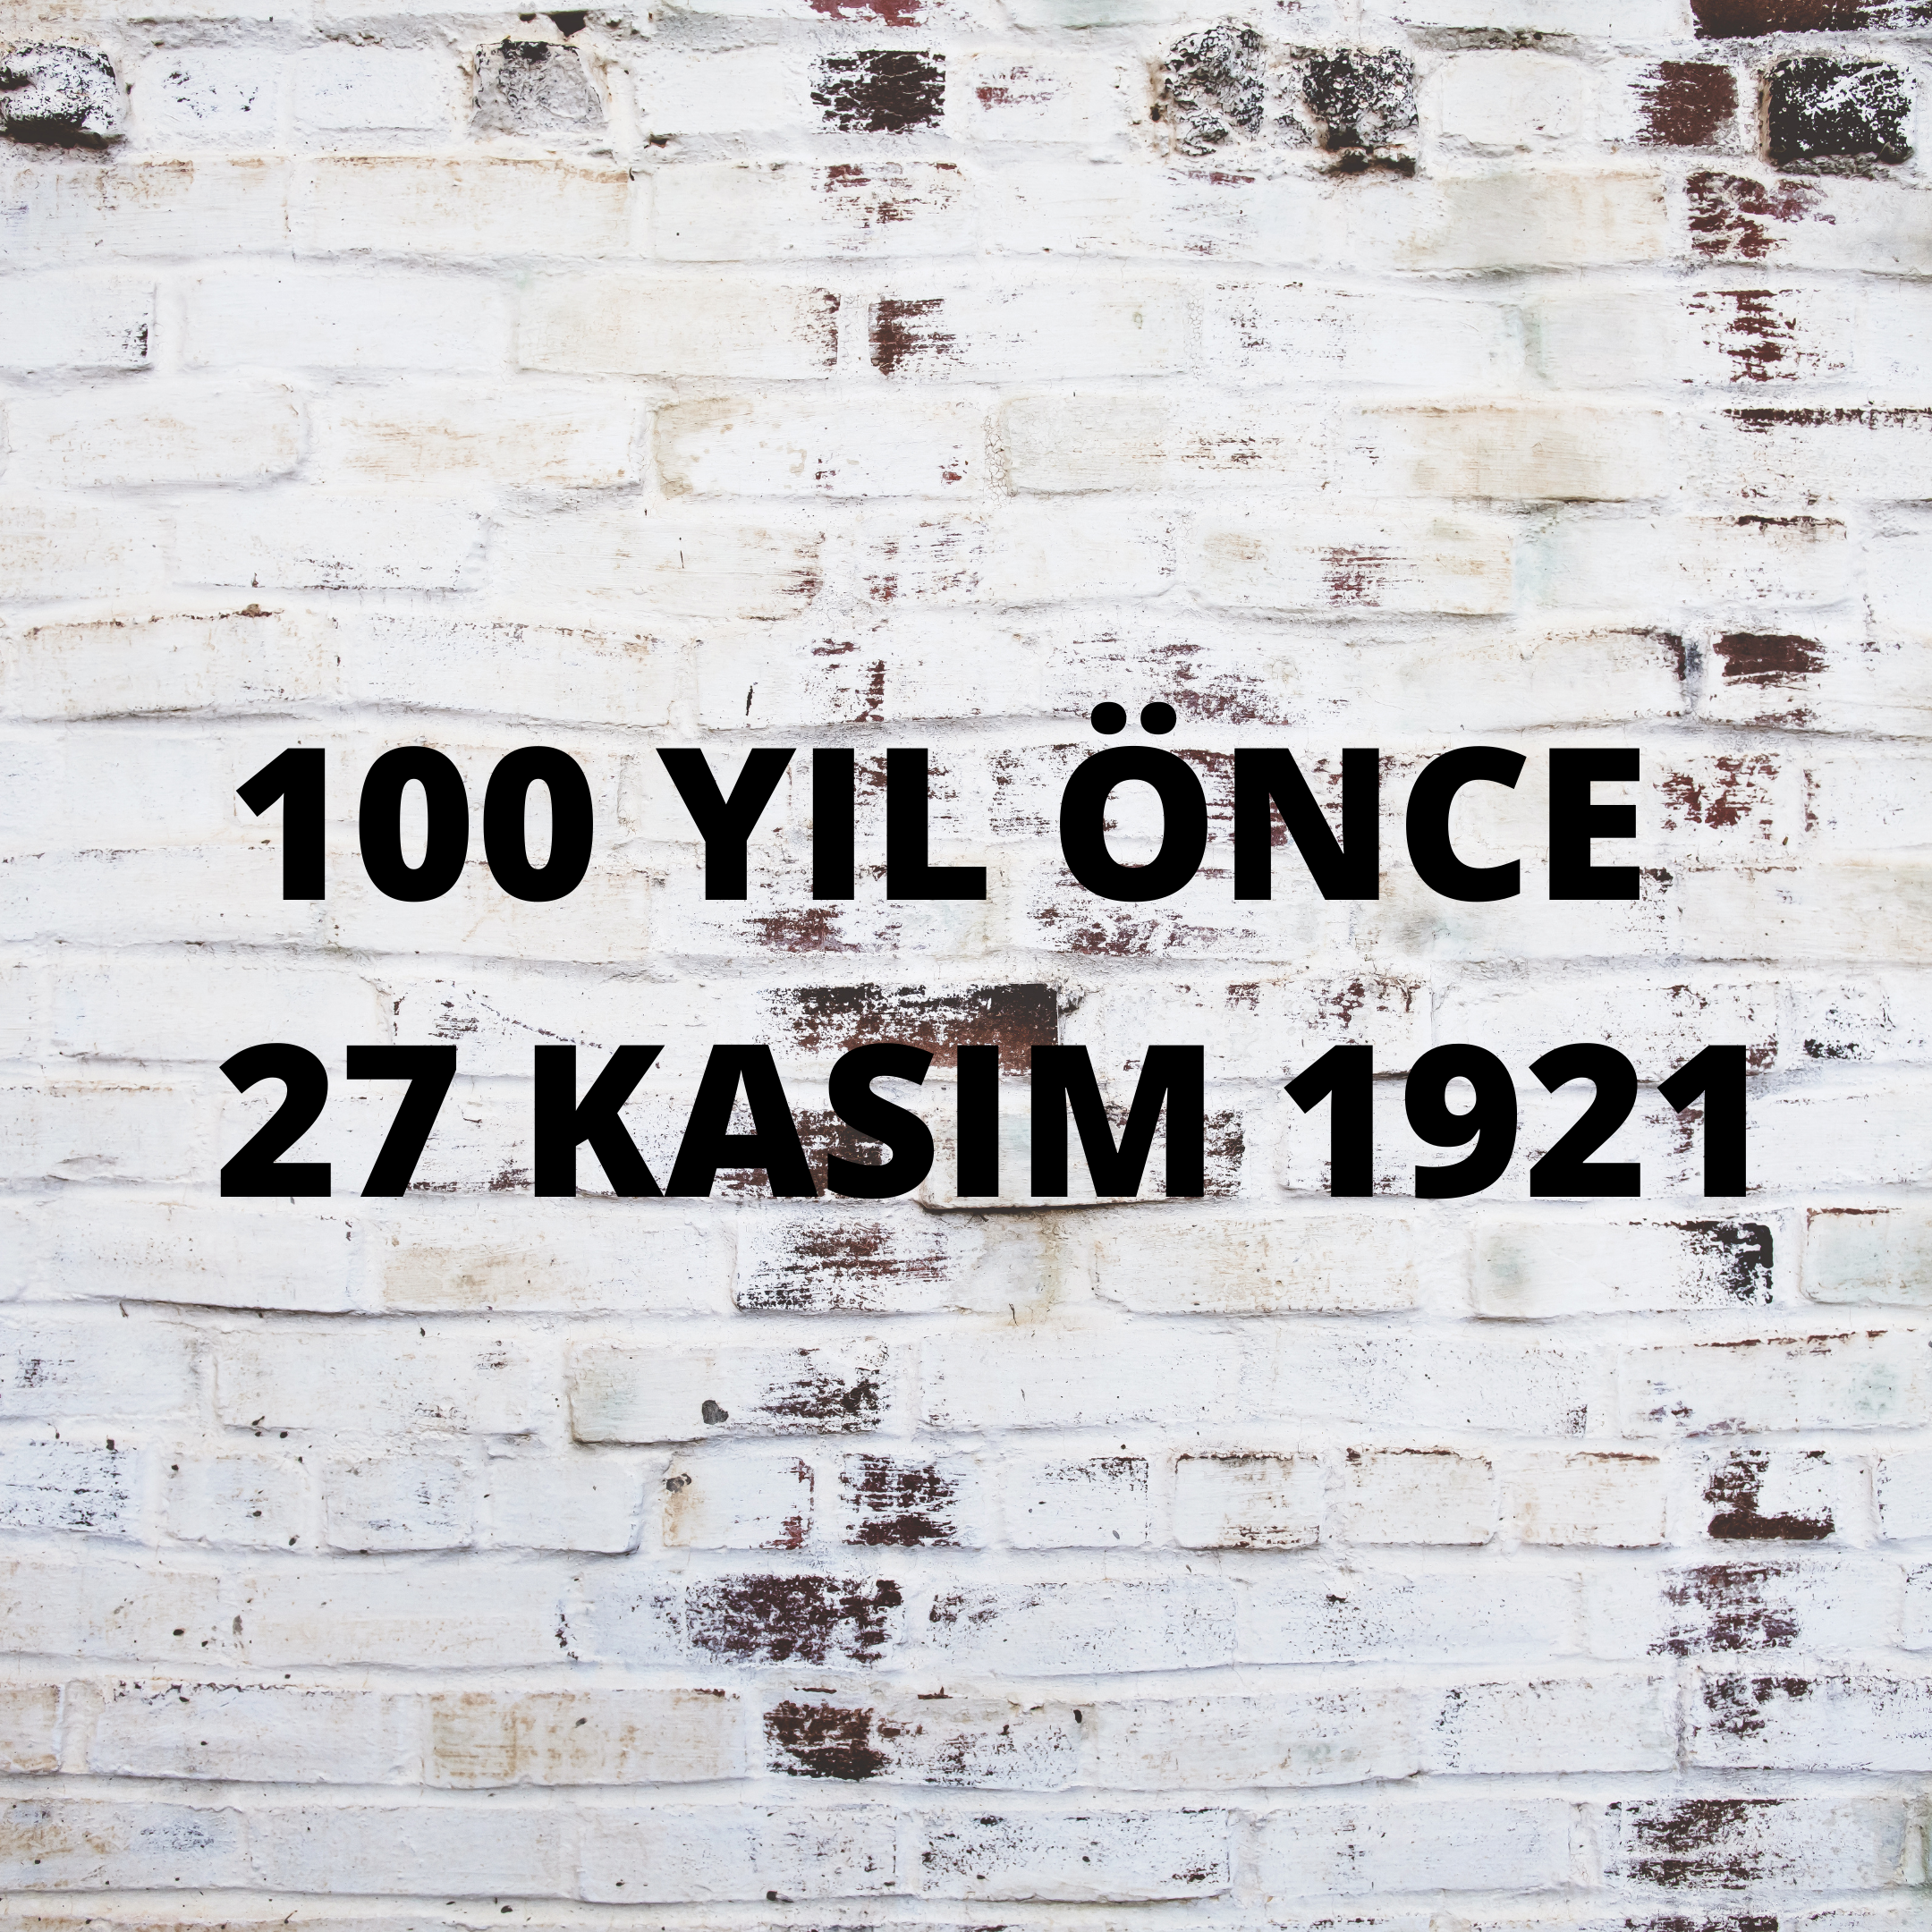 100 YIL ÖNCE 27 KASIM 1921